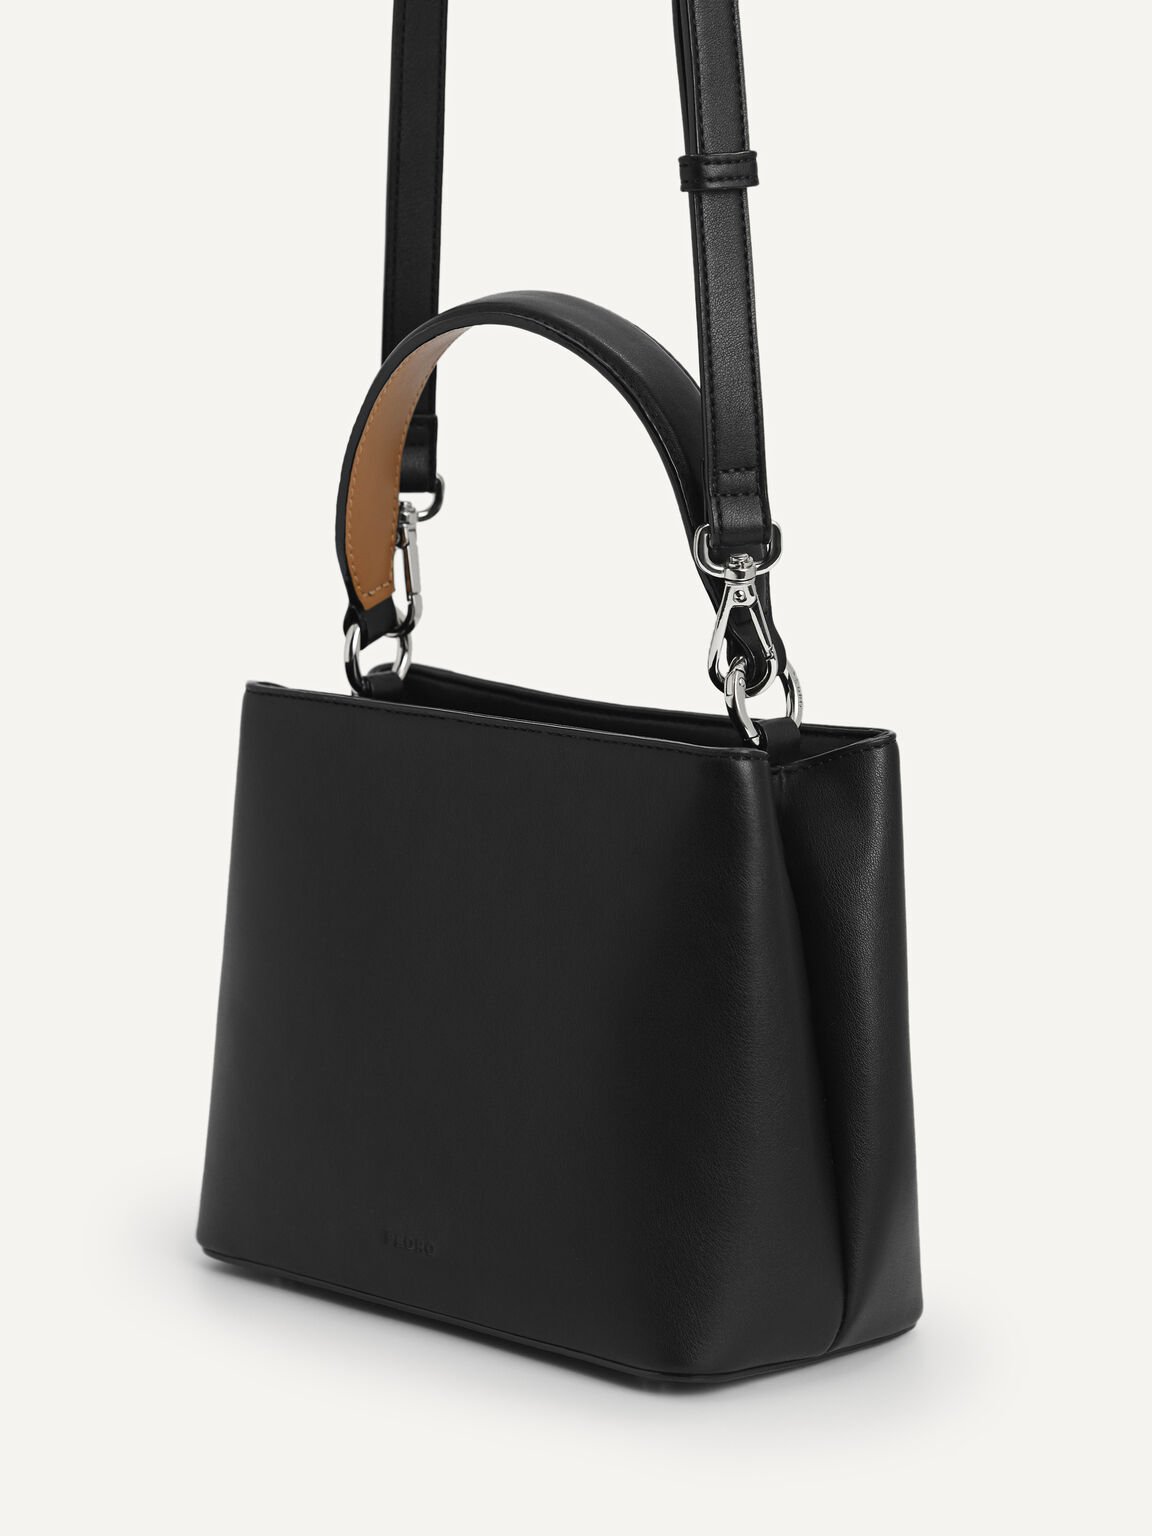 Orb Top Handle Bag, Black